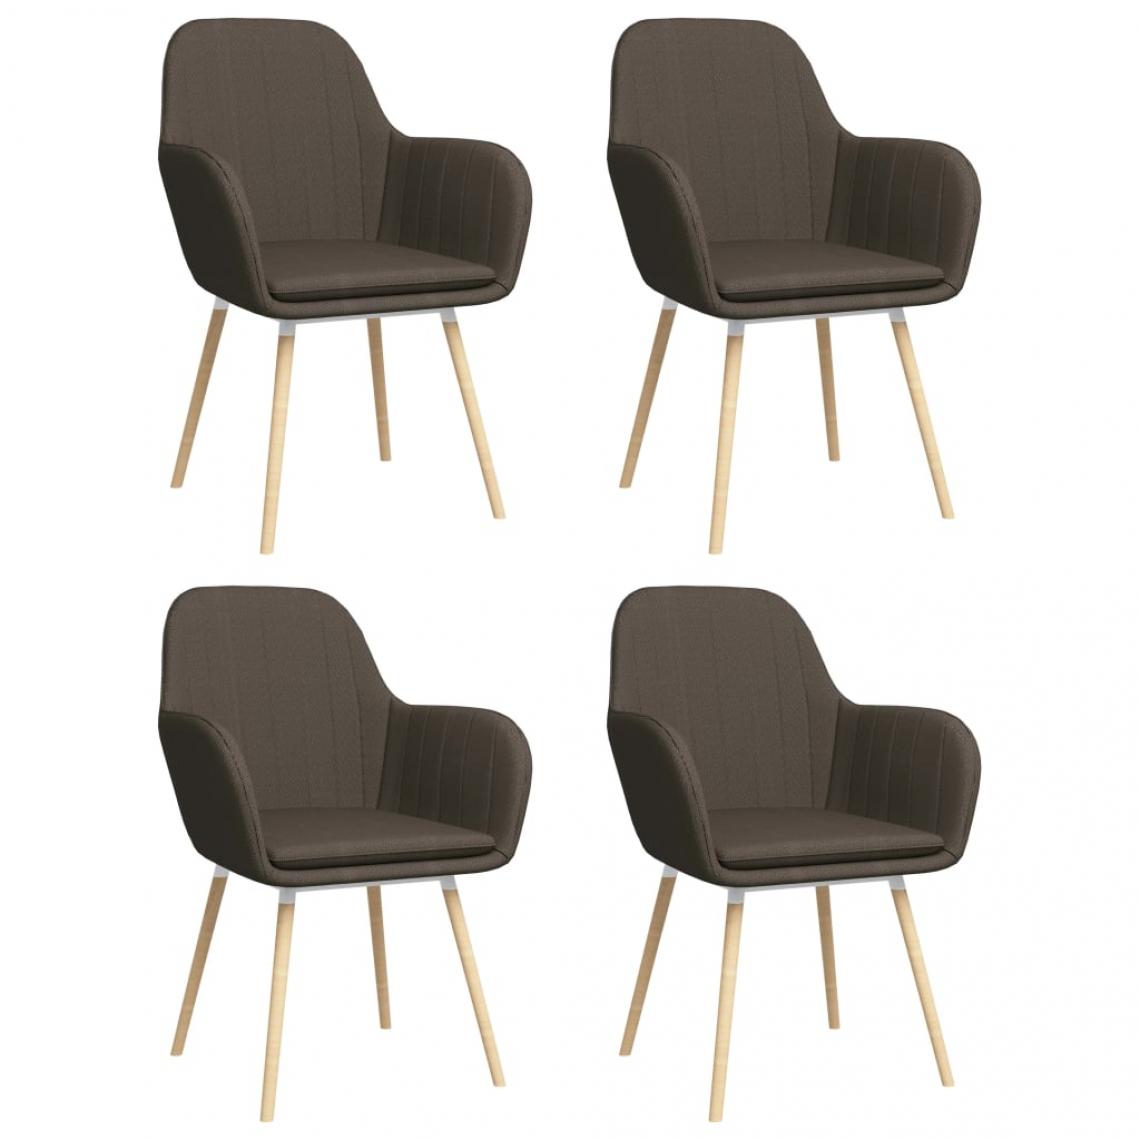 Decoshop26 - Lot de 4 chaises de salle à manger cuisine avec accoudoirs design moderne tissu taupe CDS021217 - Chaises